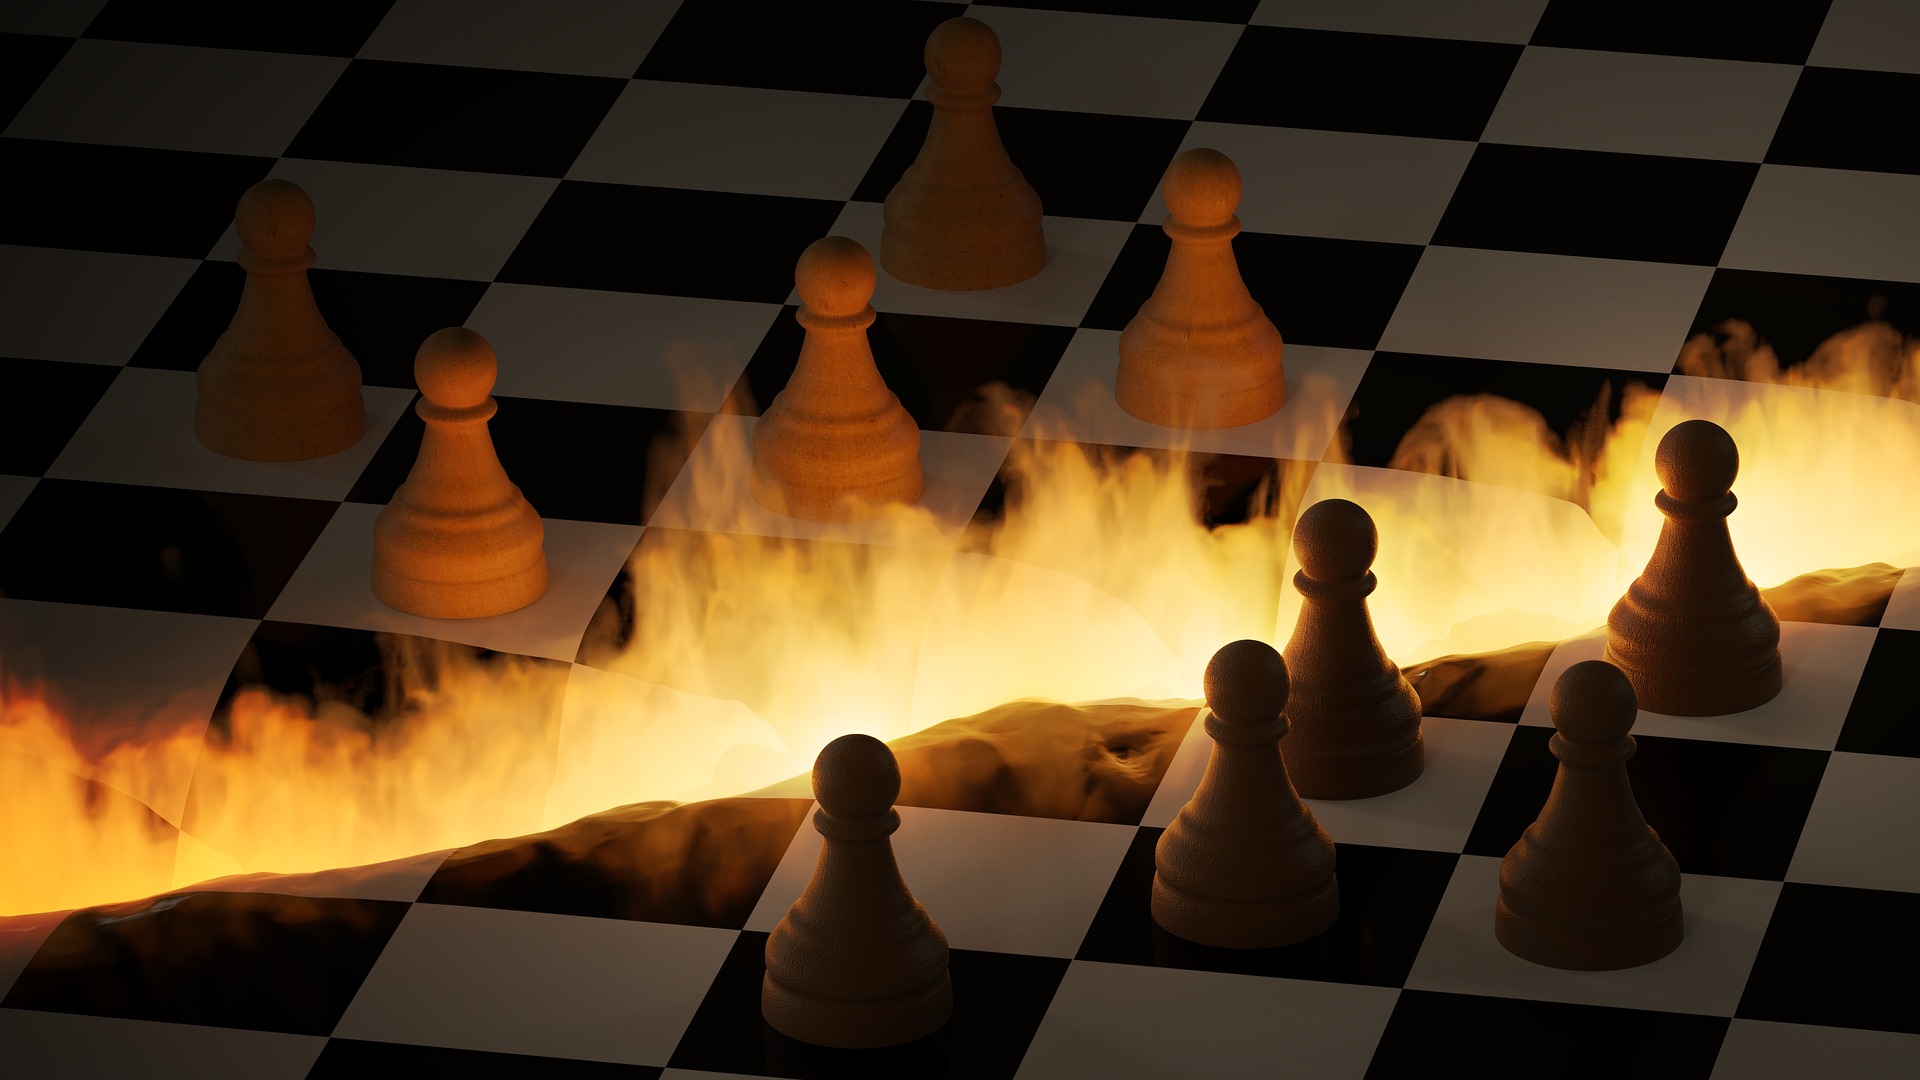 Ilustração de tabuleiro de xadrez, em três dimensões, dividido por uma faixa de fogo, como se fosse uma queimada.